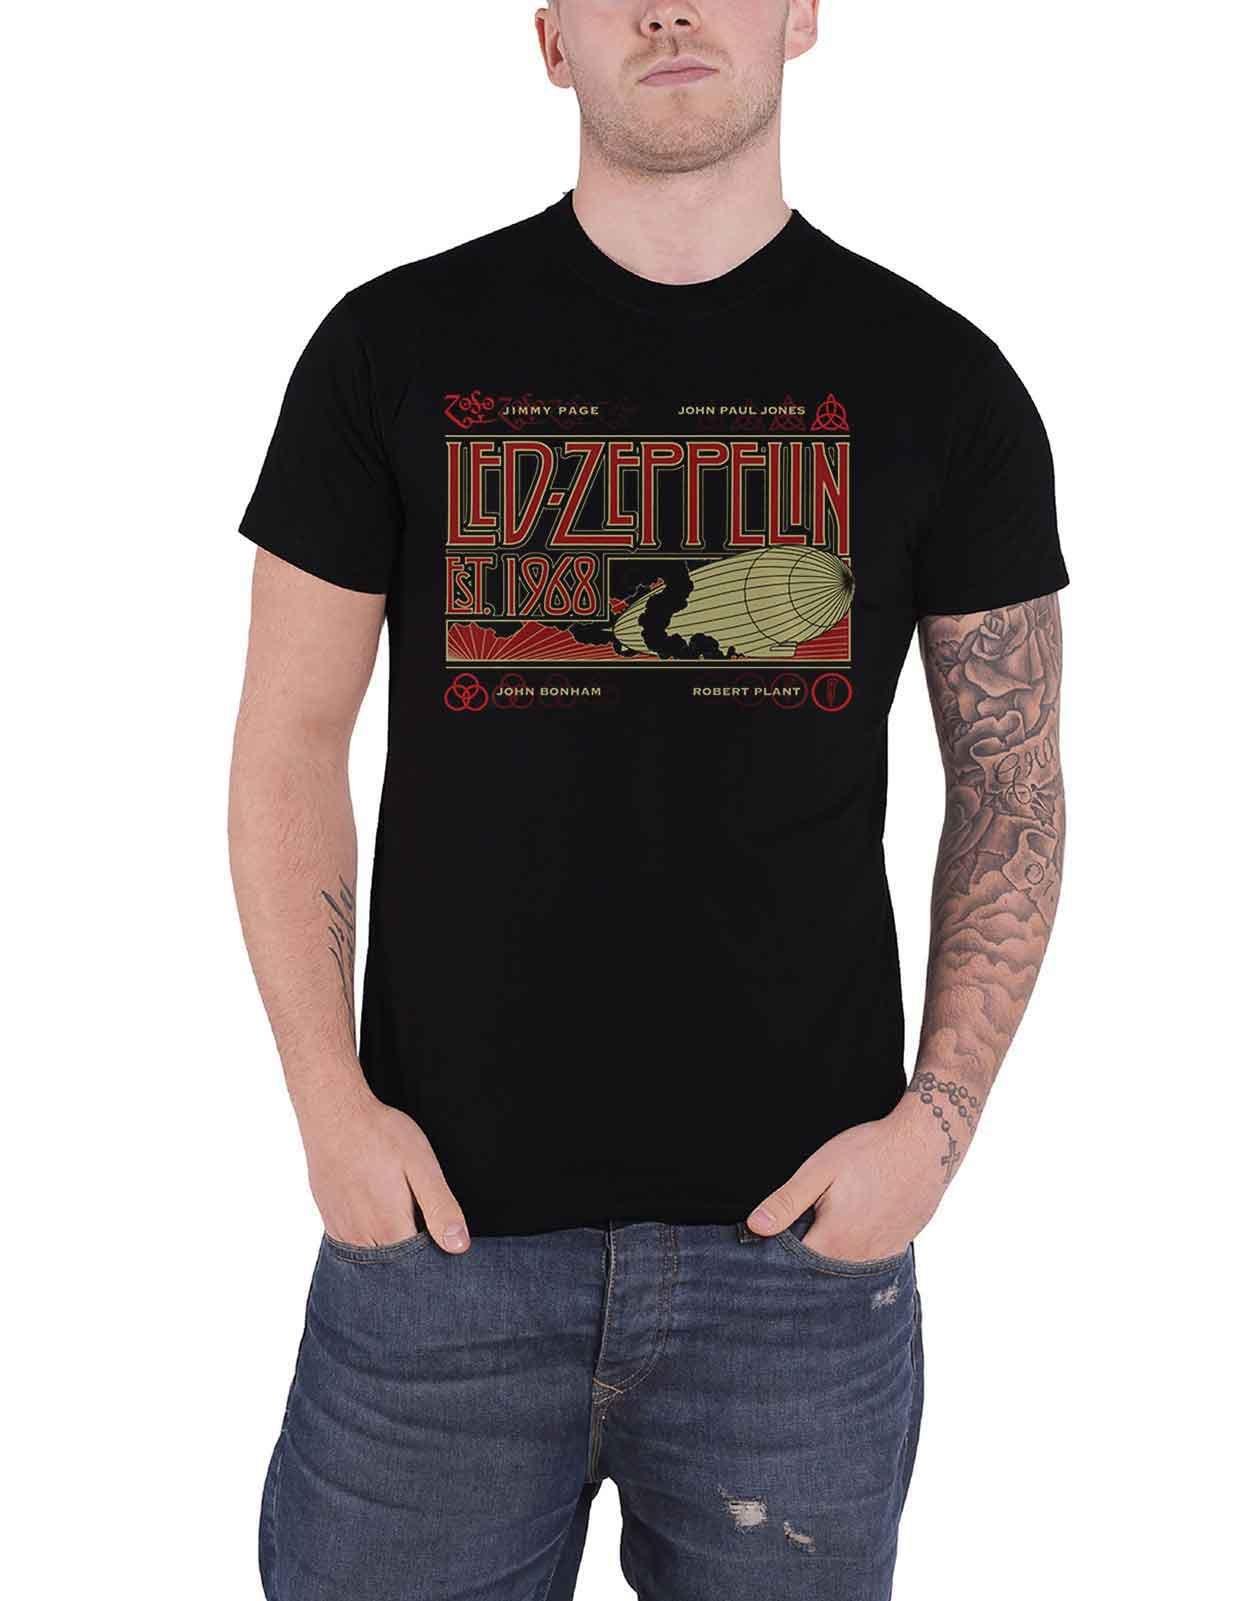 Футболка «Цеппелин и дым» Led Zeppelin, черный темно фиолетовая мужская черная футболка с графическим рисунком футболка с фанатом рок группы размер s 3xl модная футболка топ футболка